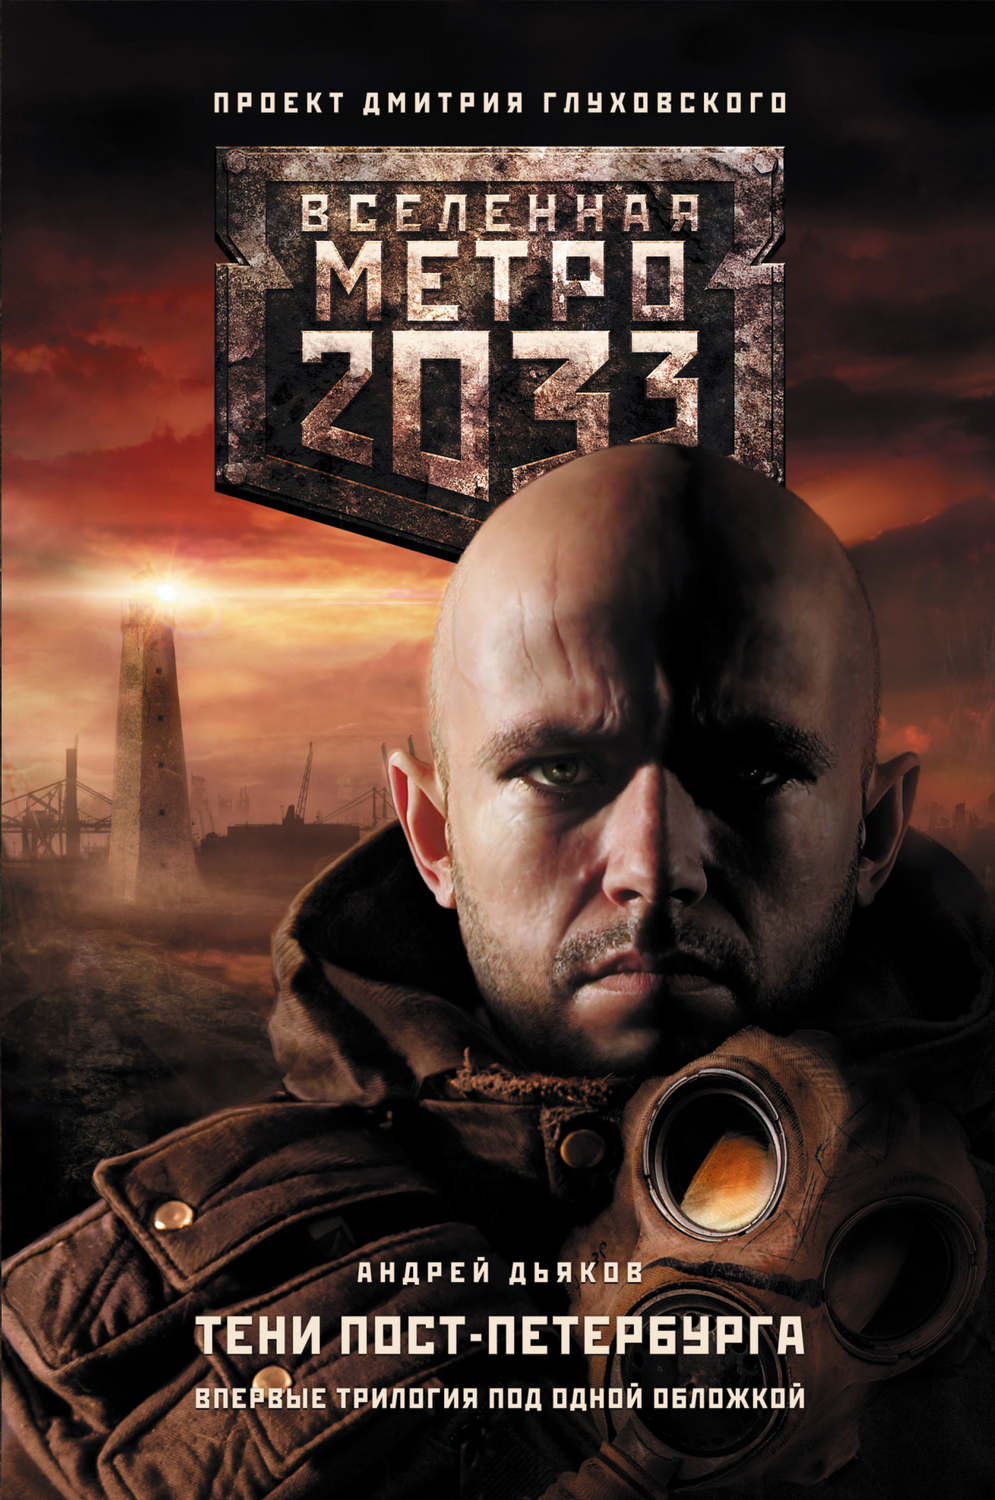 Книги метро 2033 рублевка 2 скачать